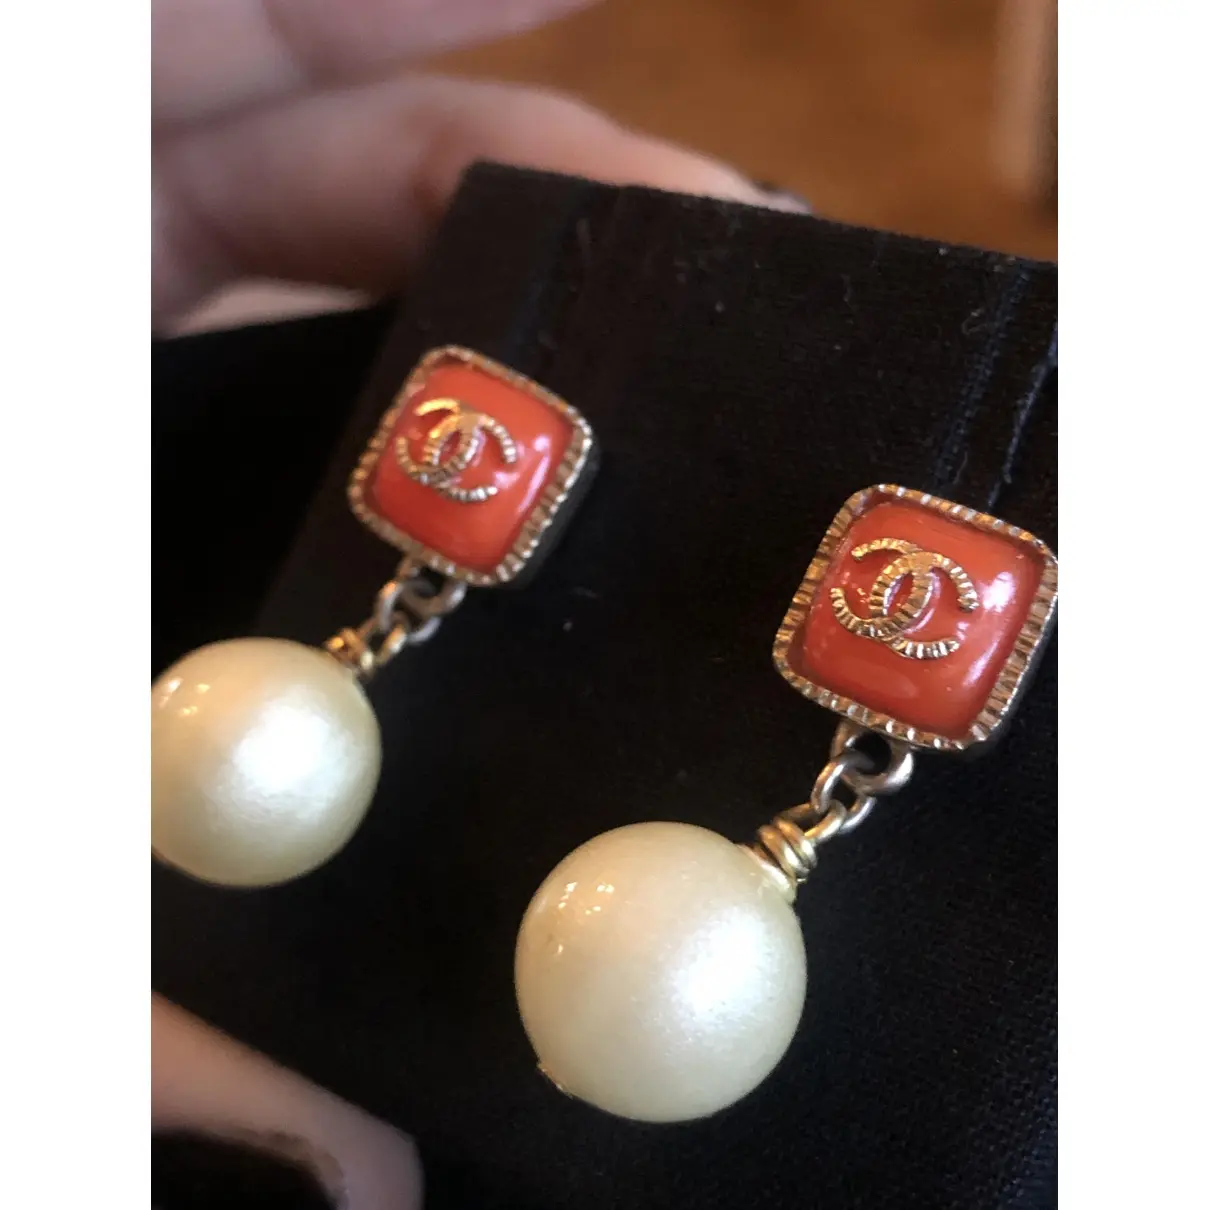 Buy Chanel Pearls earrings online